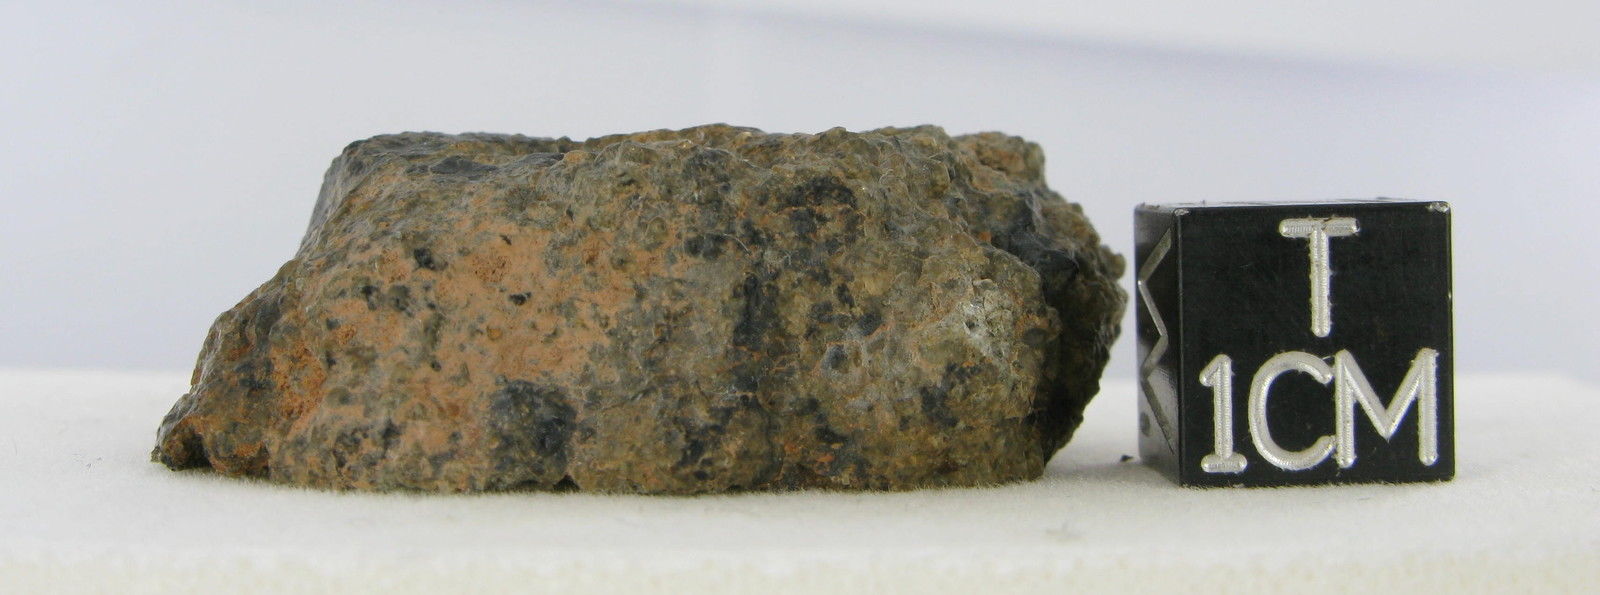 martian meteorite - NWA 2975 14.jpg